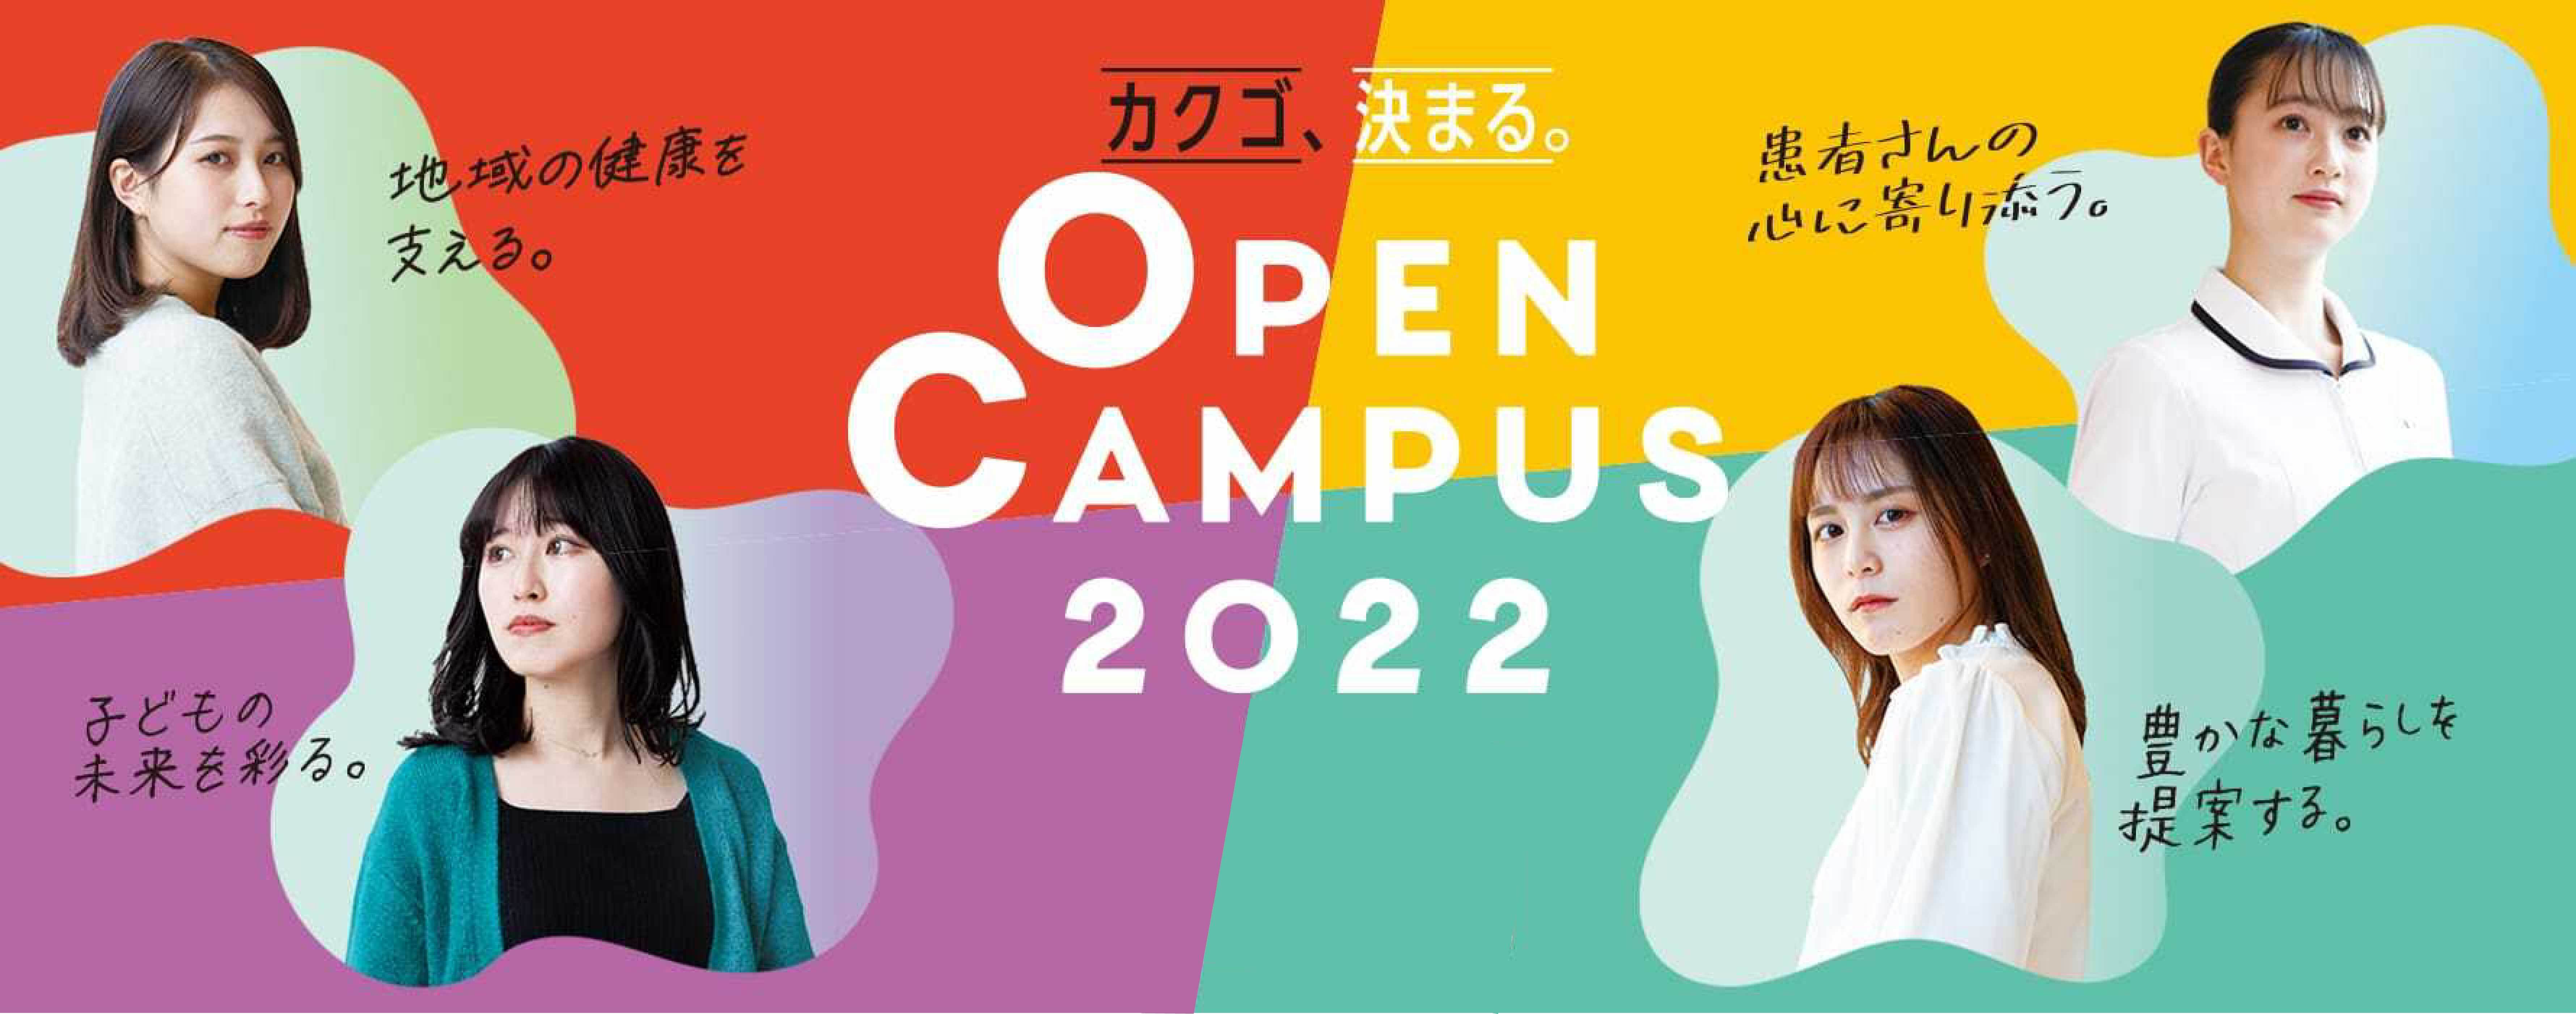 Open Campus 2022